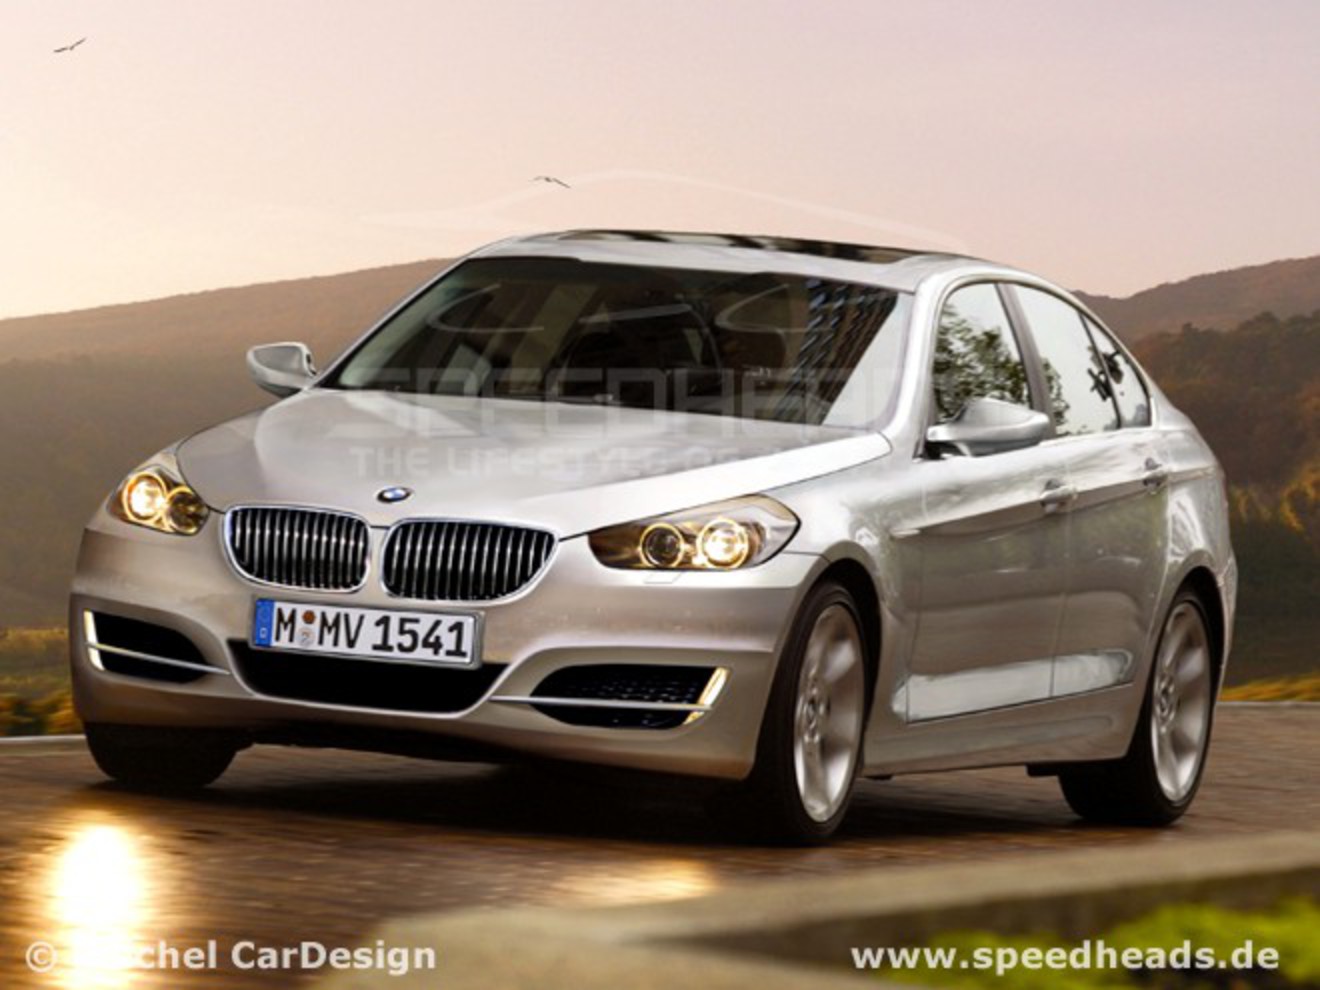 BMW 3er im Jahre 2012 · Reichel CarDesign, 2007